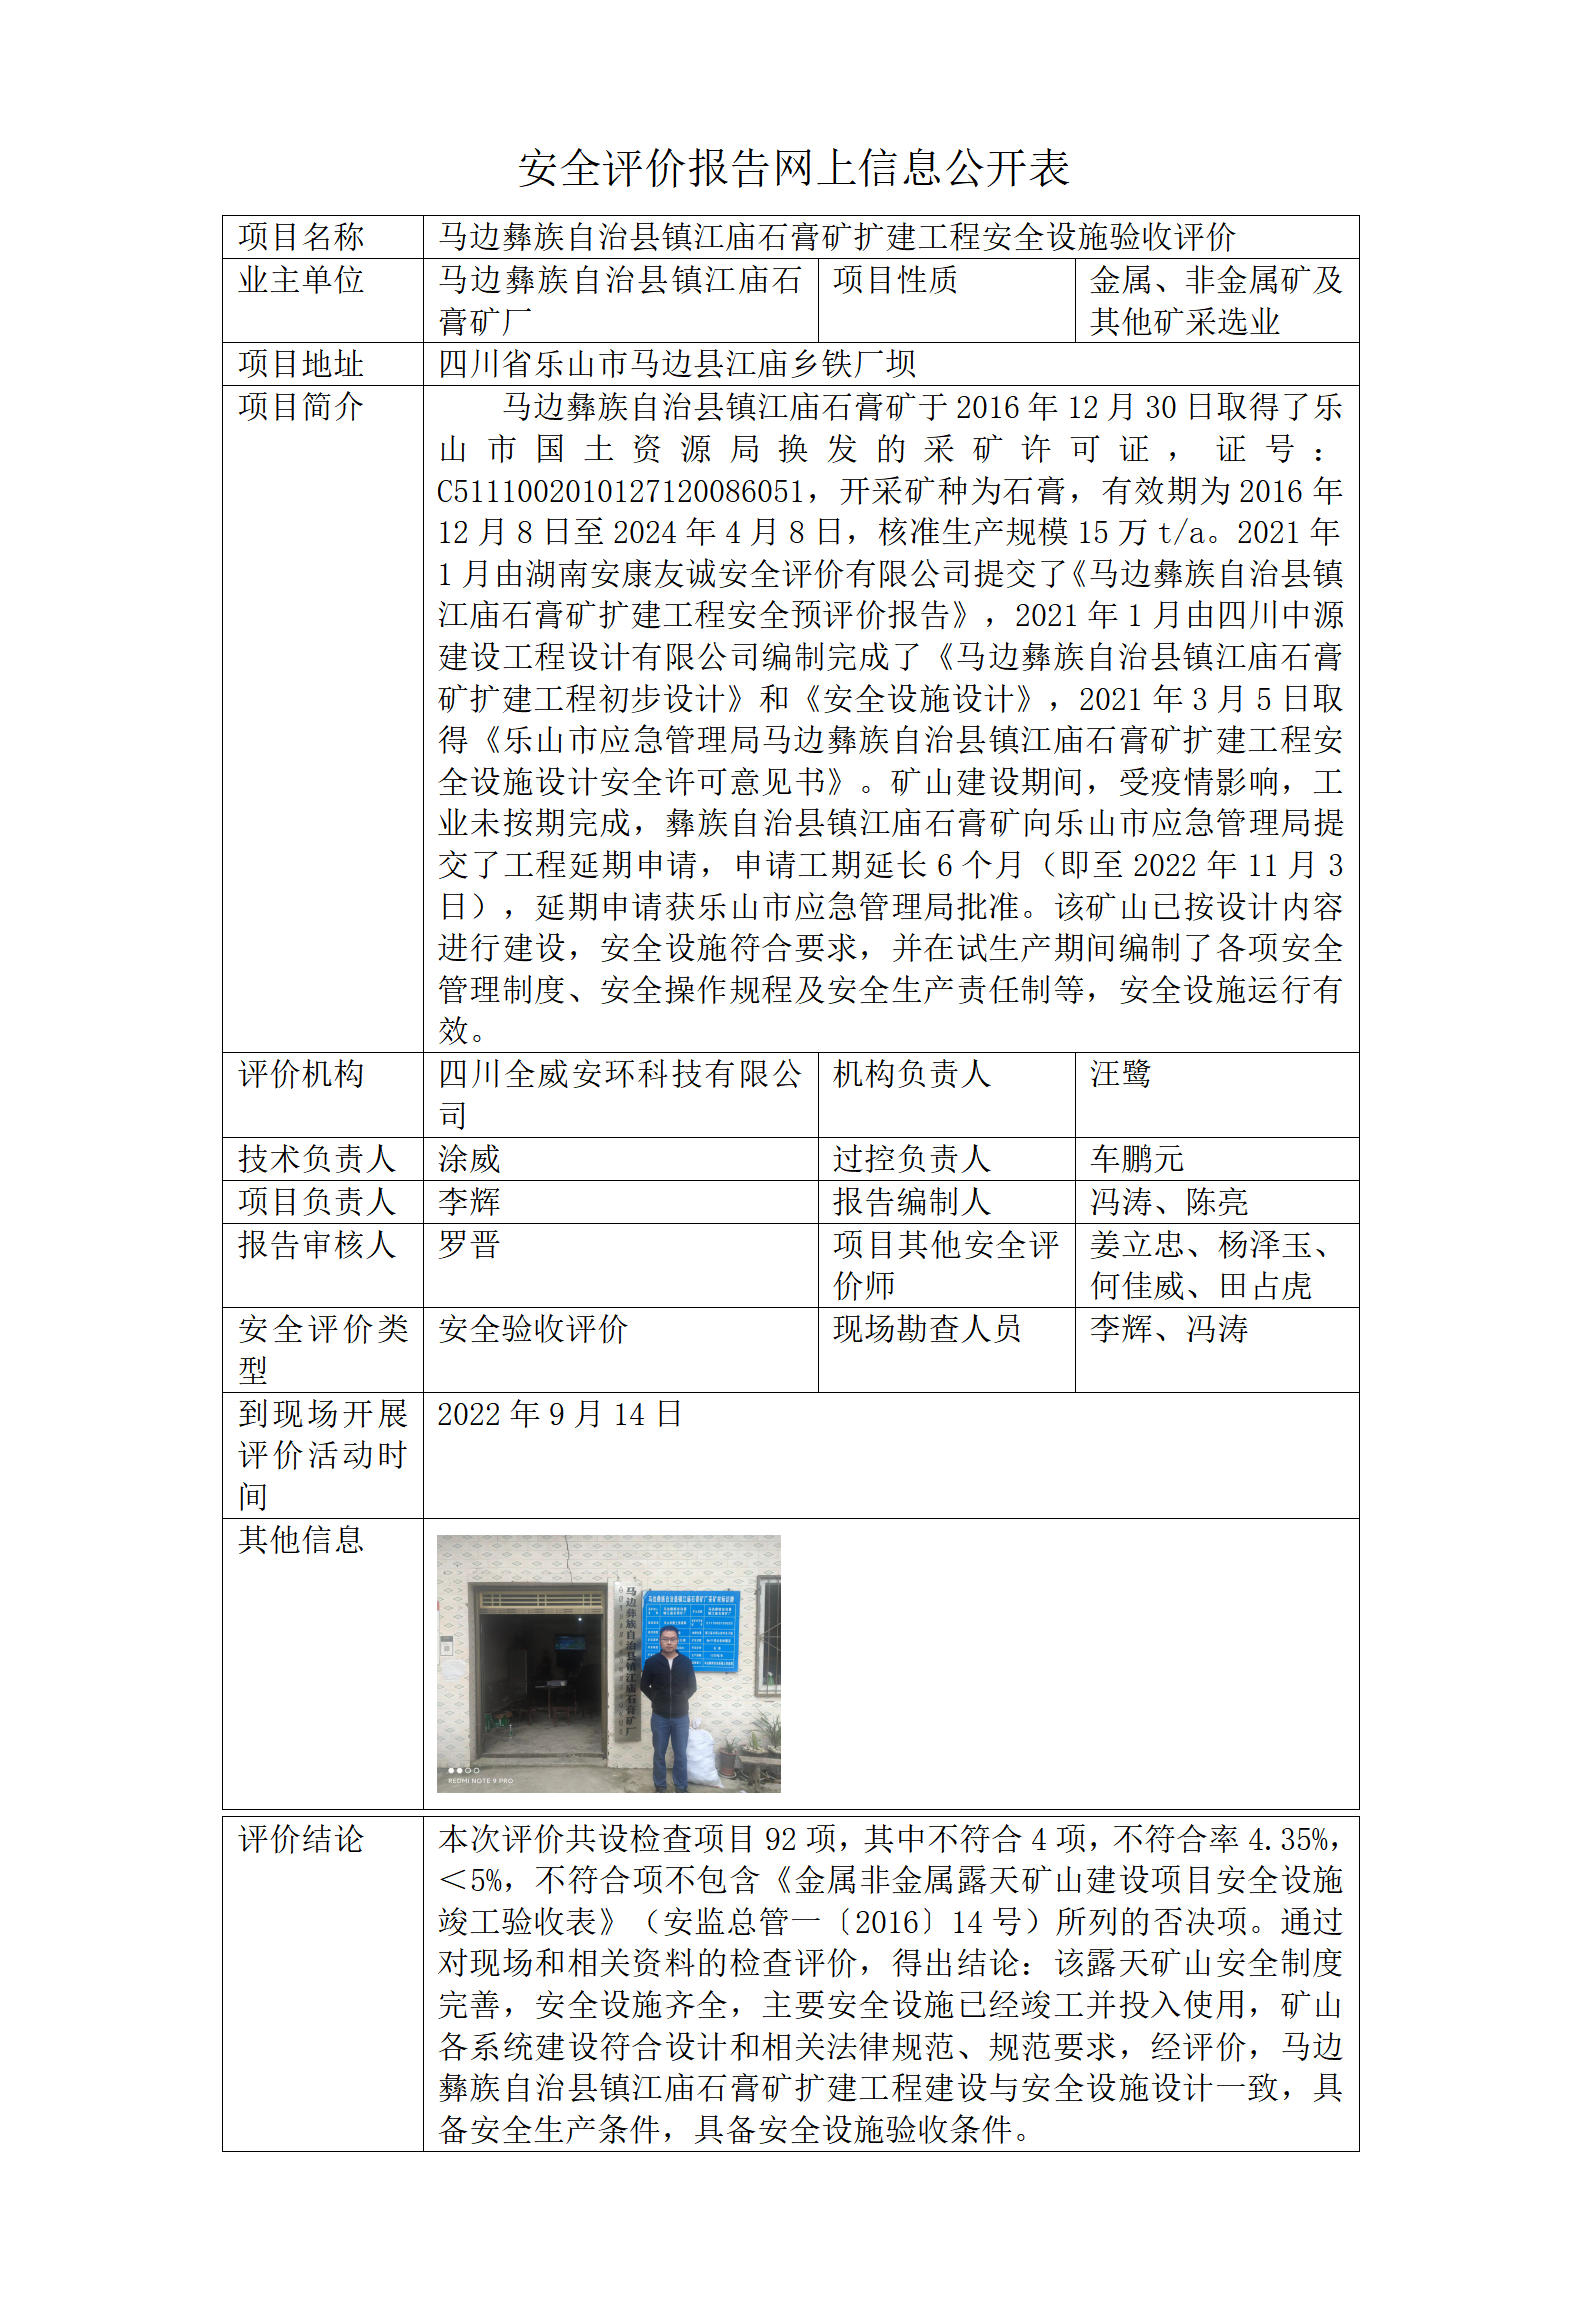 马边彝族自治县镇江庙石膏矿扩建工程安全设施验收评价